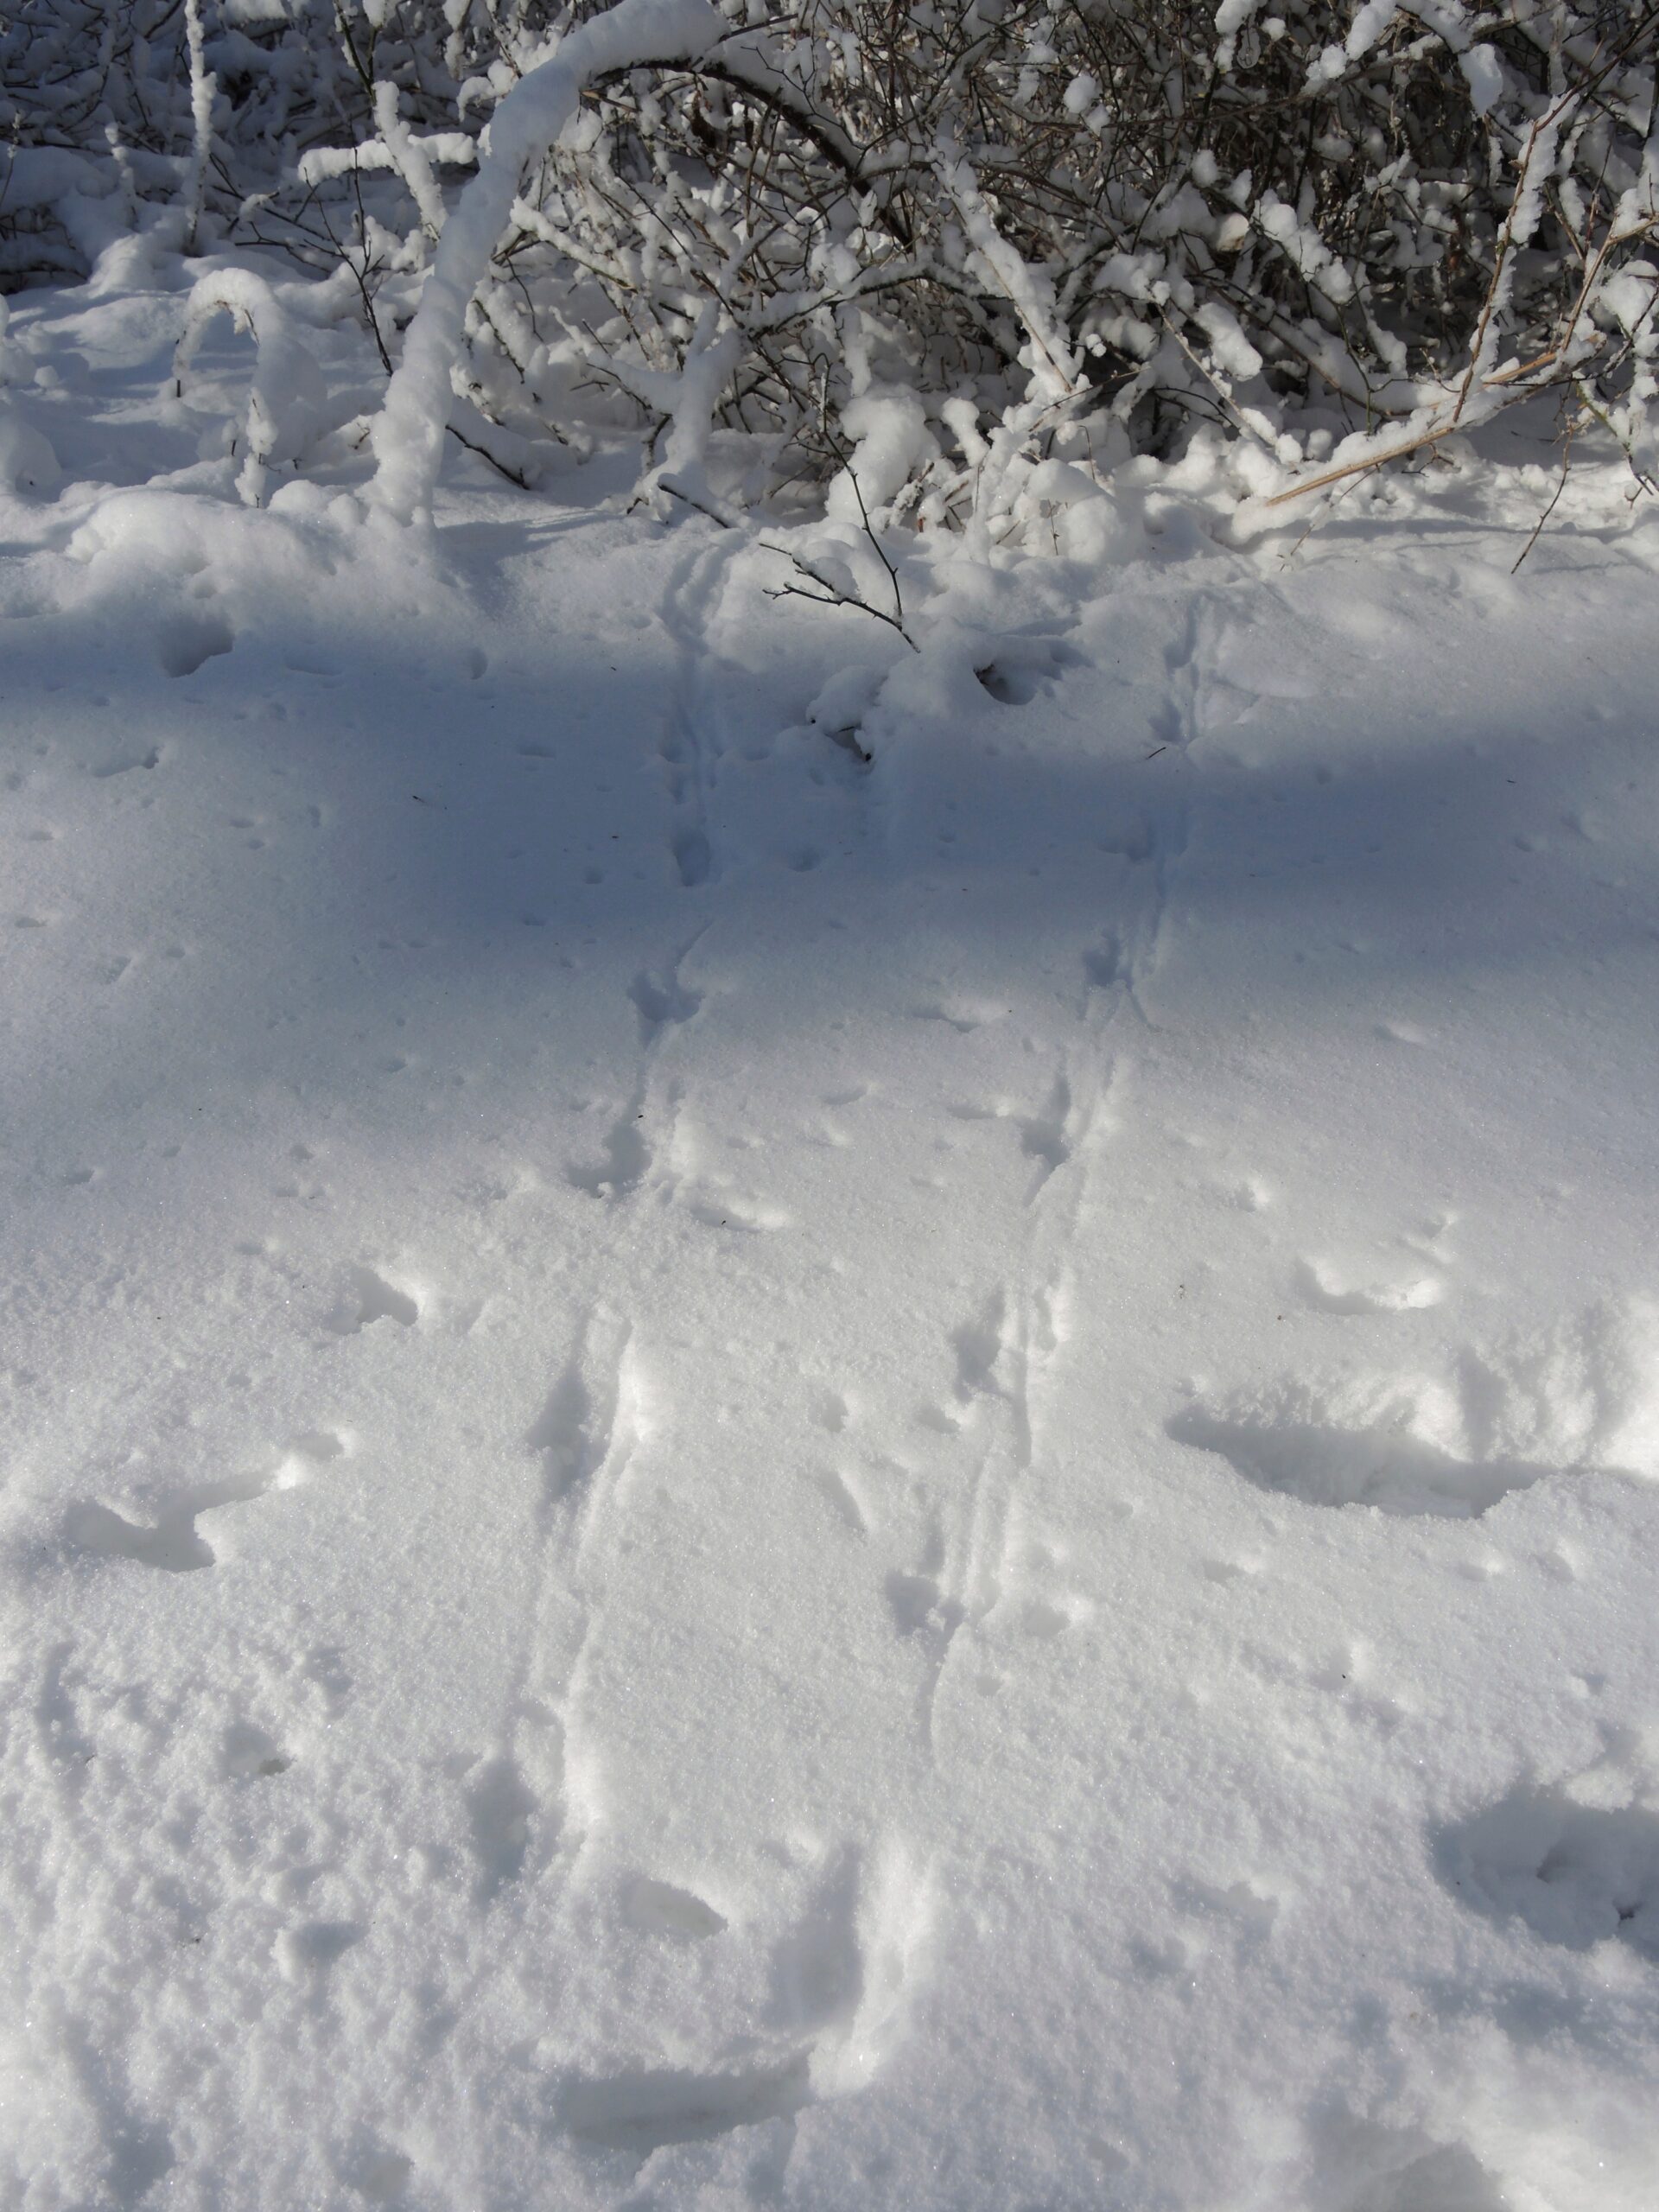 Deer tracks in snowpack.